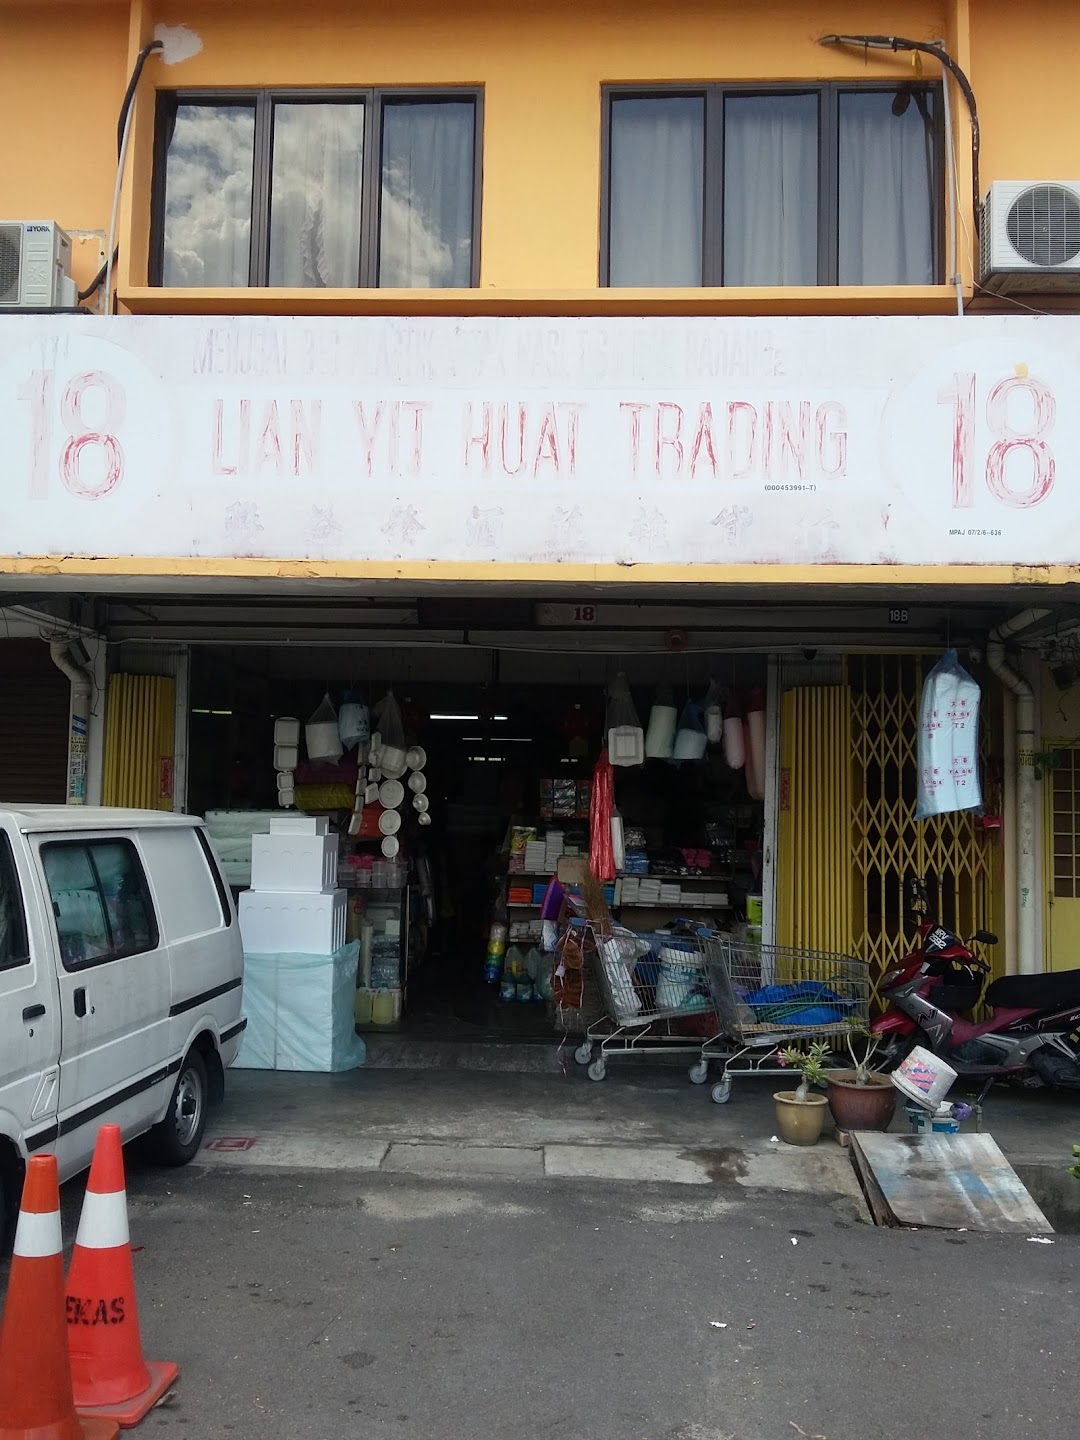 Lian Yit Huat Trading